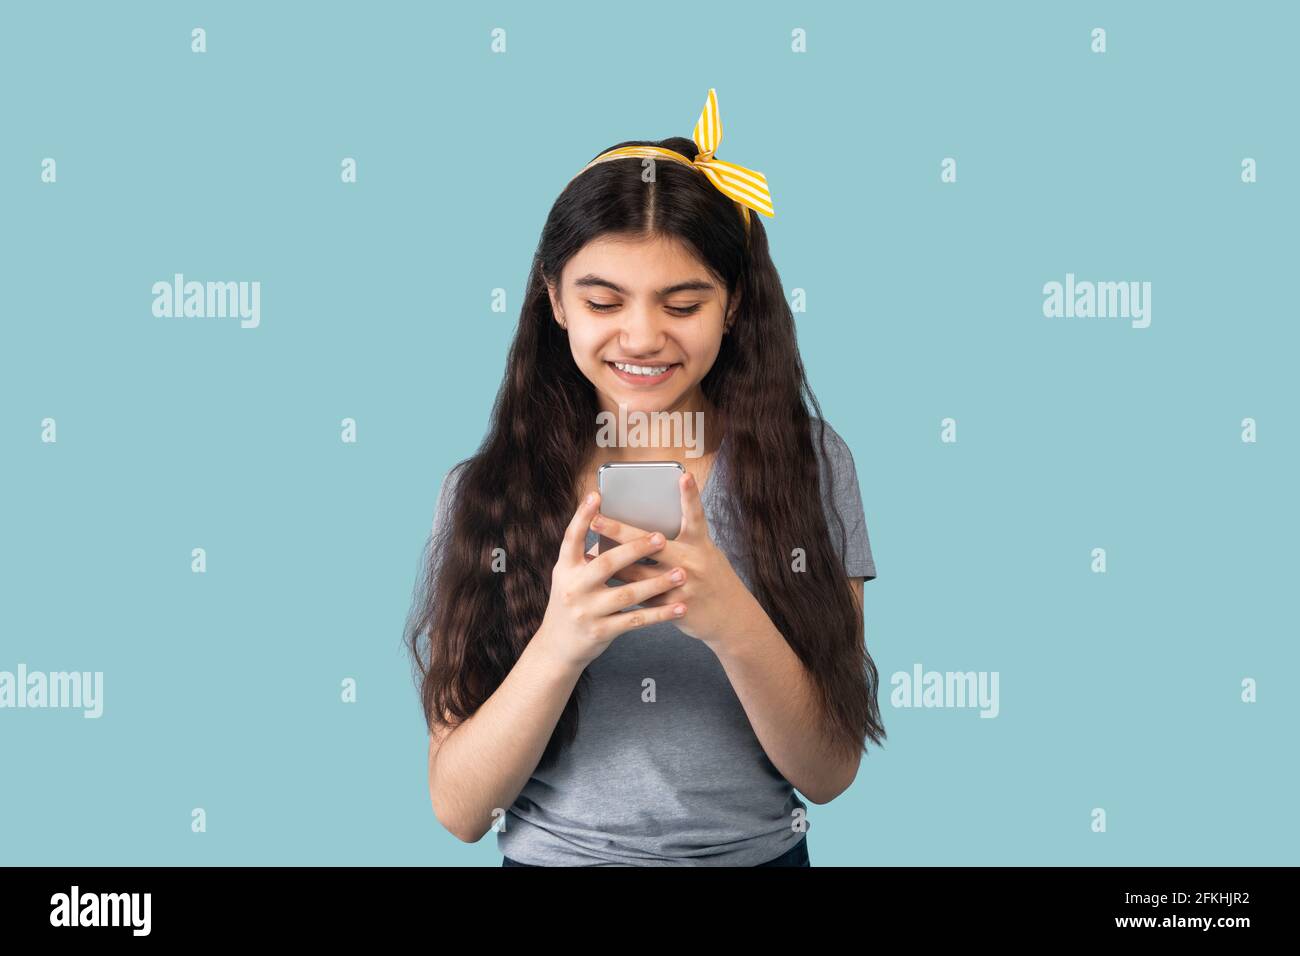 Menschen und Technologie. Porträt eines glücklichen lächelnden indischen Teenagers mit Smartphone über blauem Studiohintergrund Stockfoto